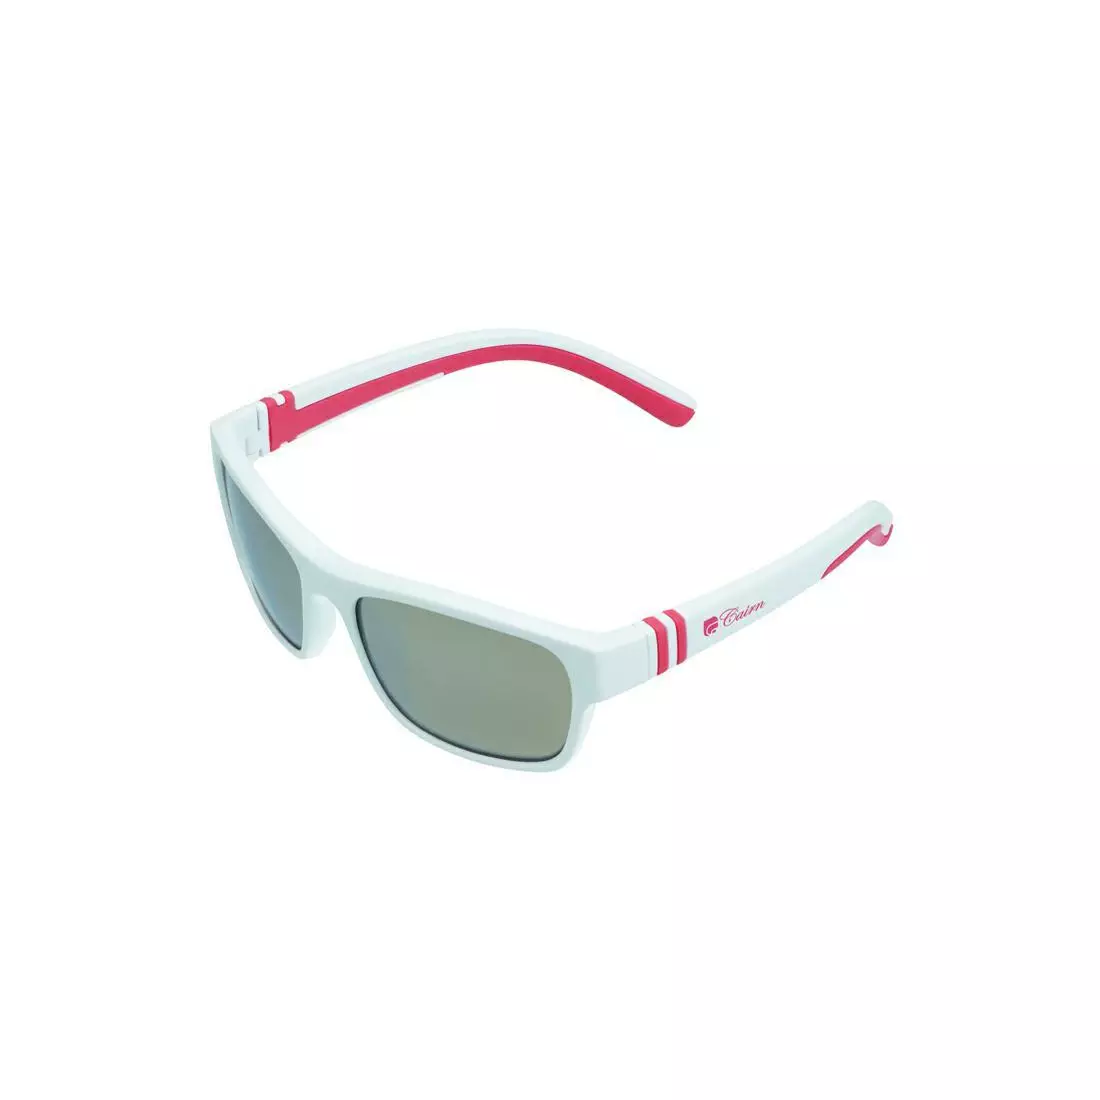 CAIRN detské športové okuliare KIWI J white/pink JLKIWI101